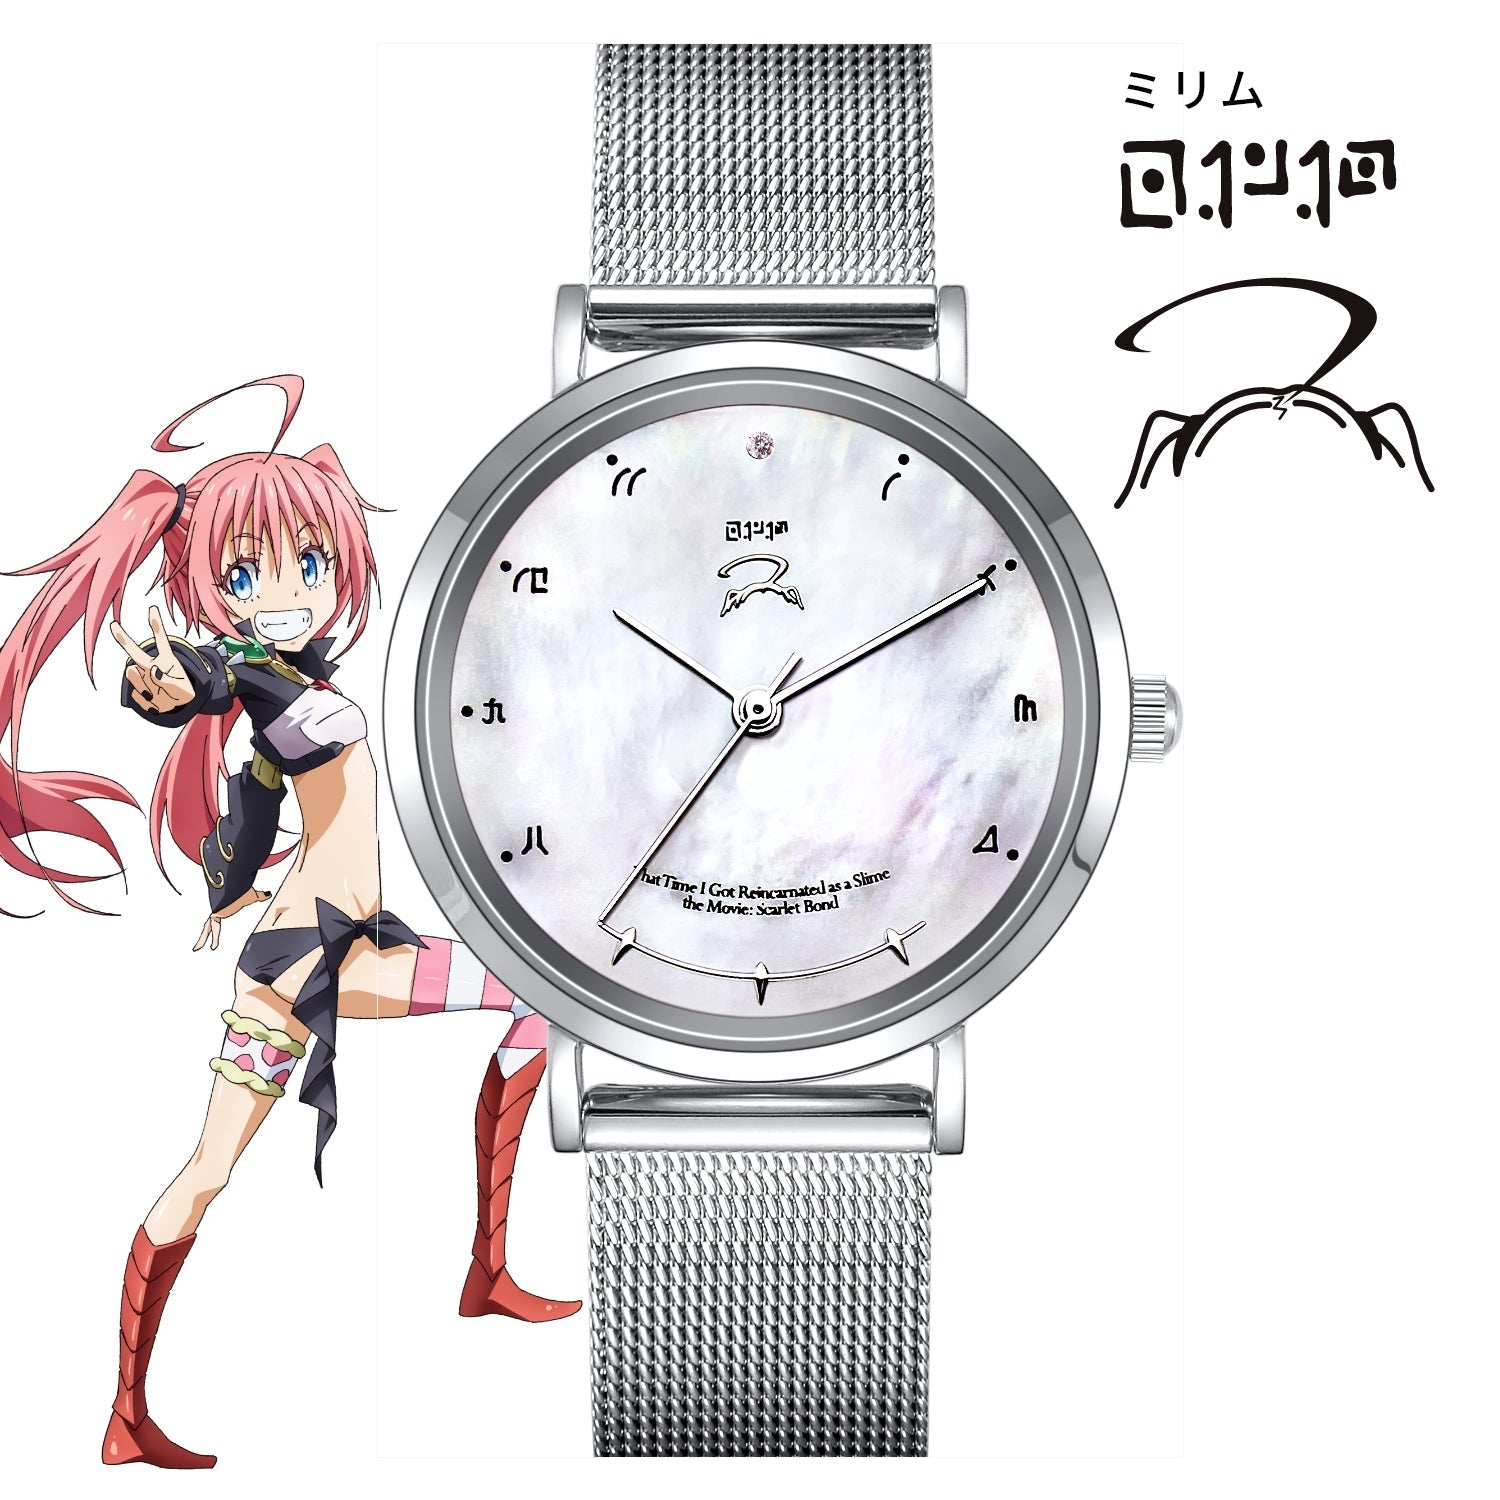 「劇場版 転生したらスライムだった件 紅蓮の絆編」オフィシャルソーラー腕時計 ミリム シルエット - 公式通販サイト「アニメコレクション/Anime Collection」